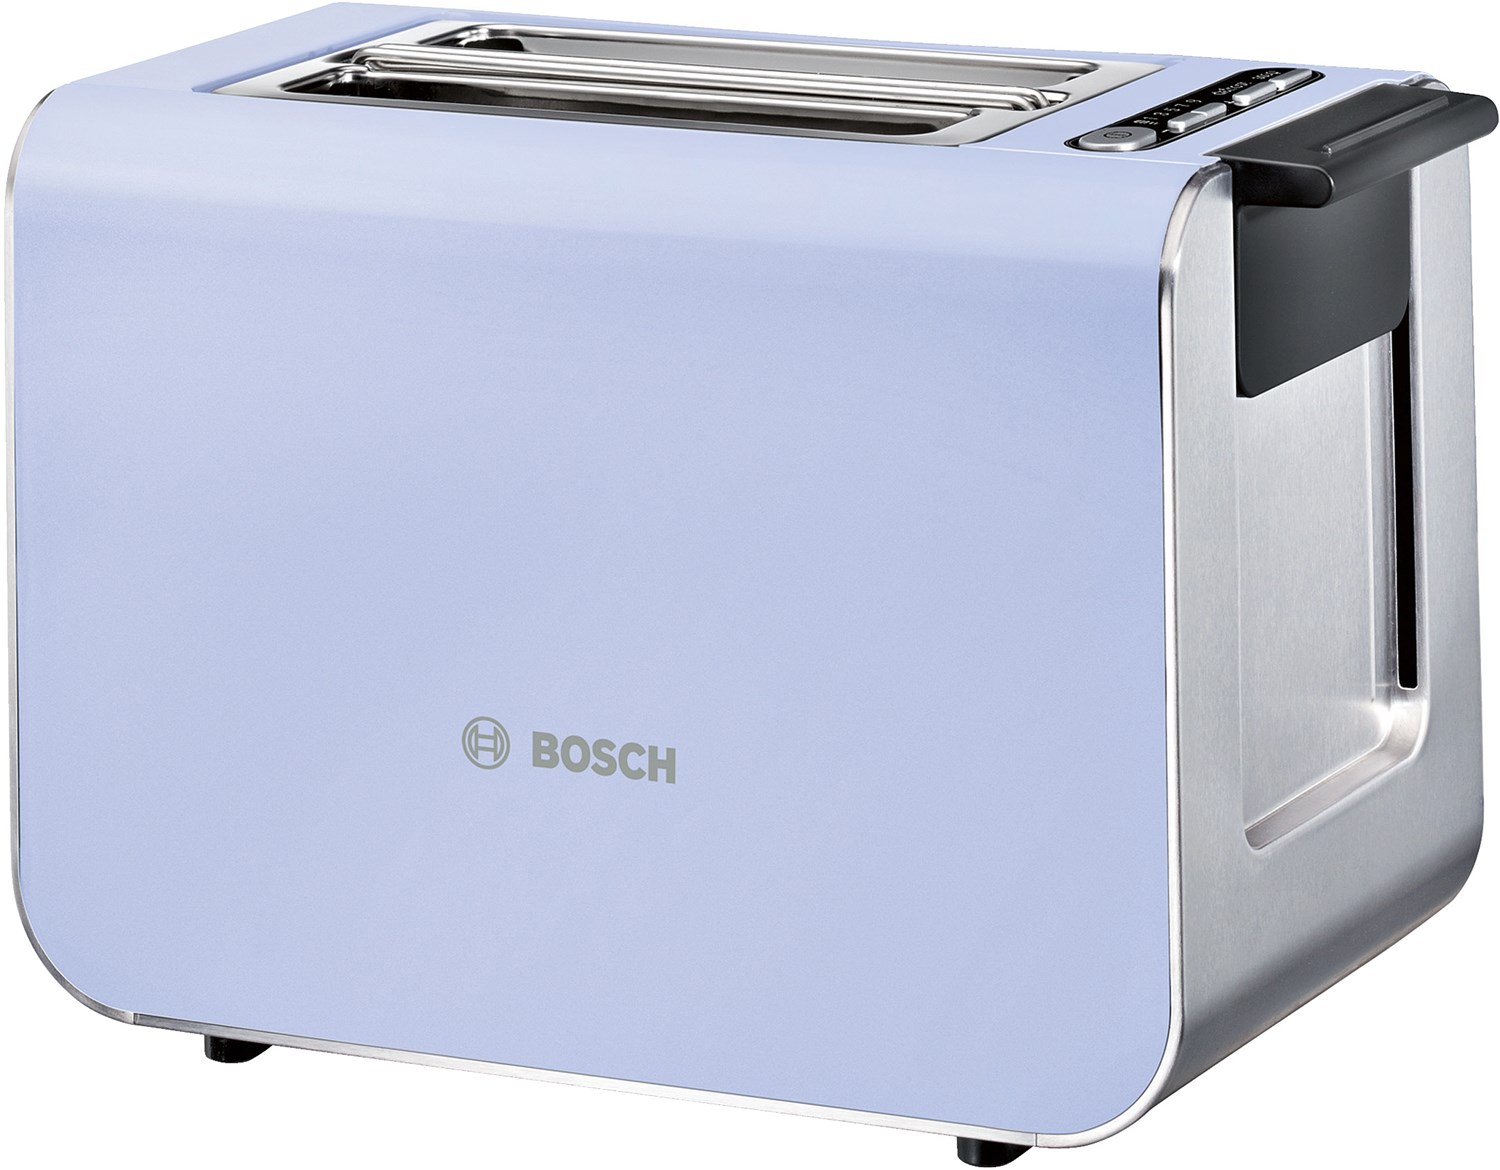 TAT8619 Kompakt-Toaster french lilac/ black grey von Bosch